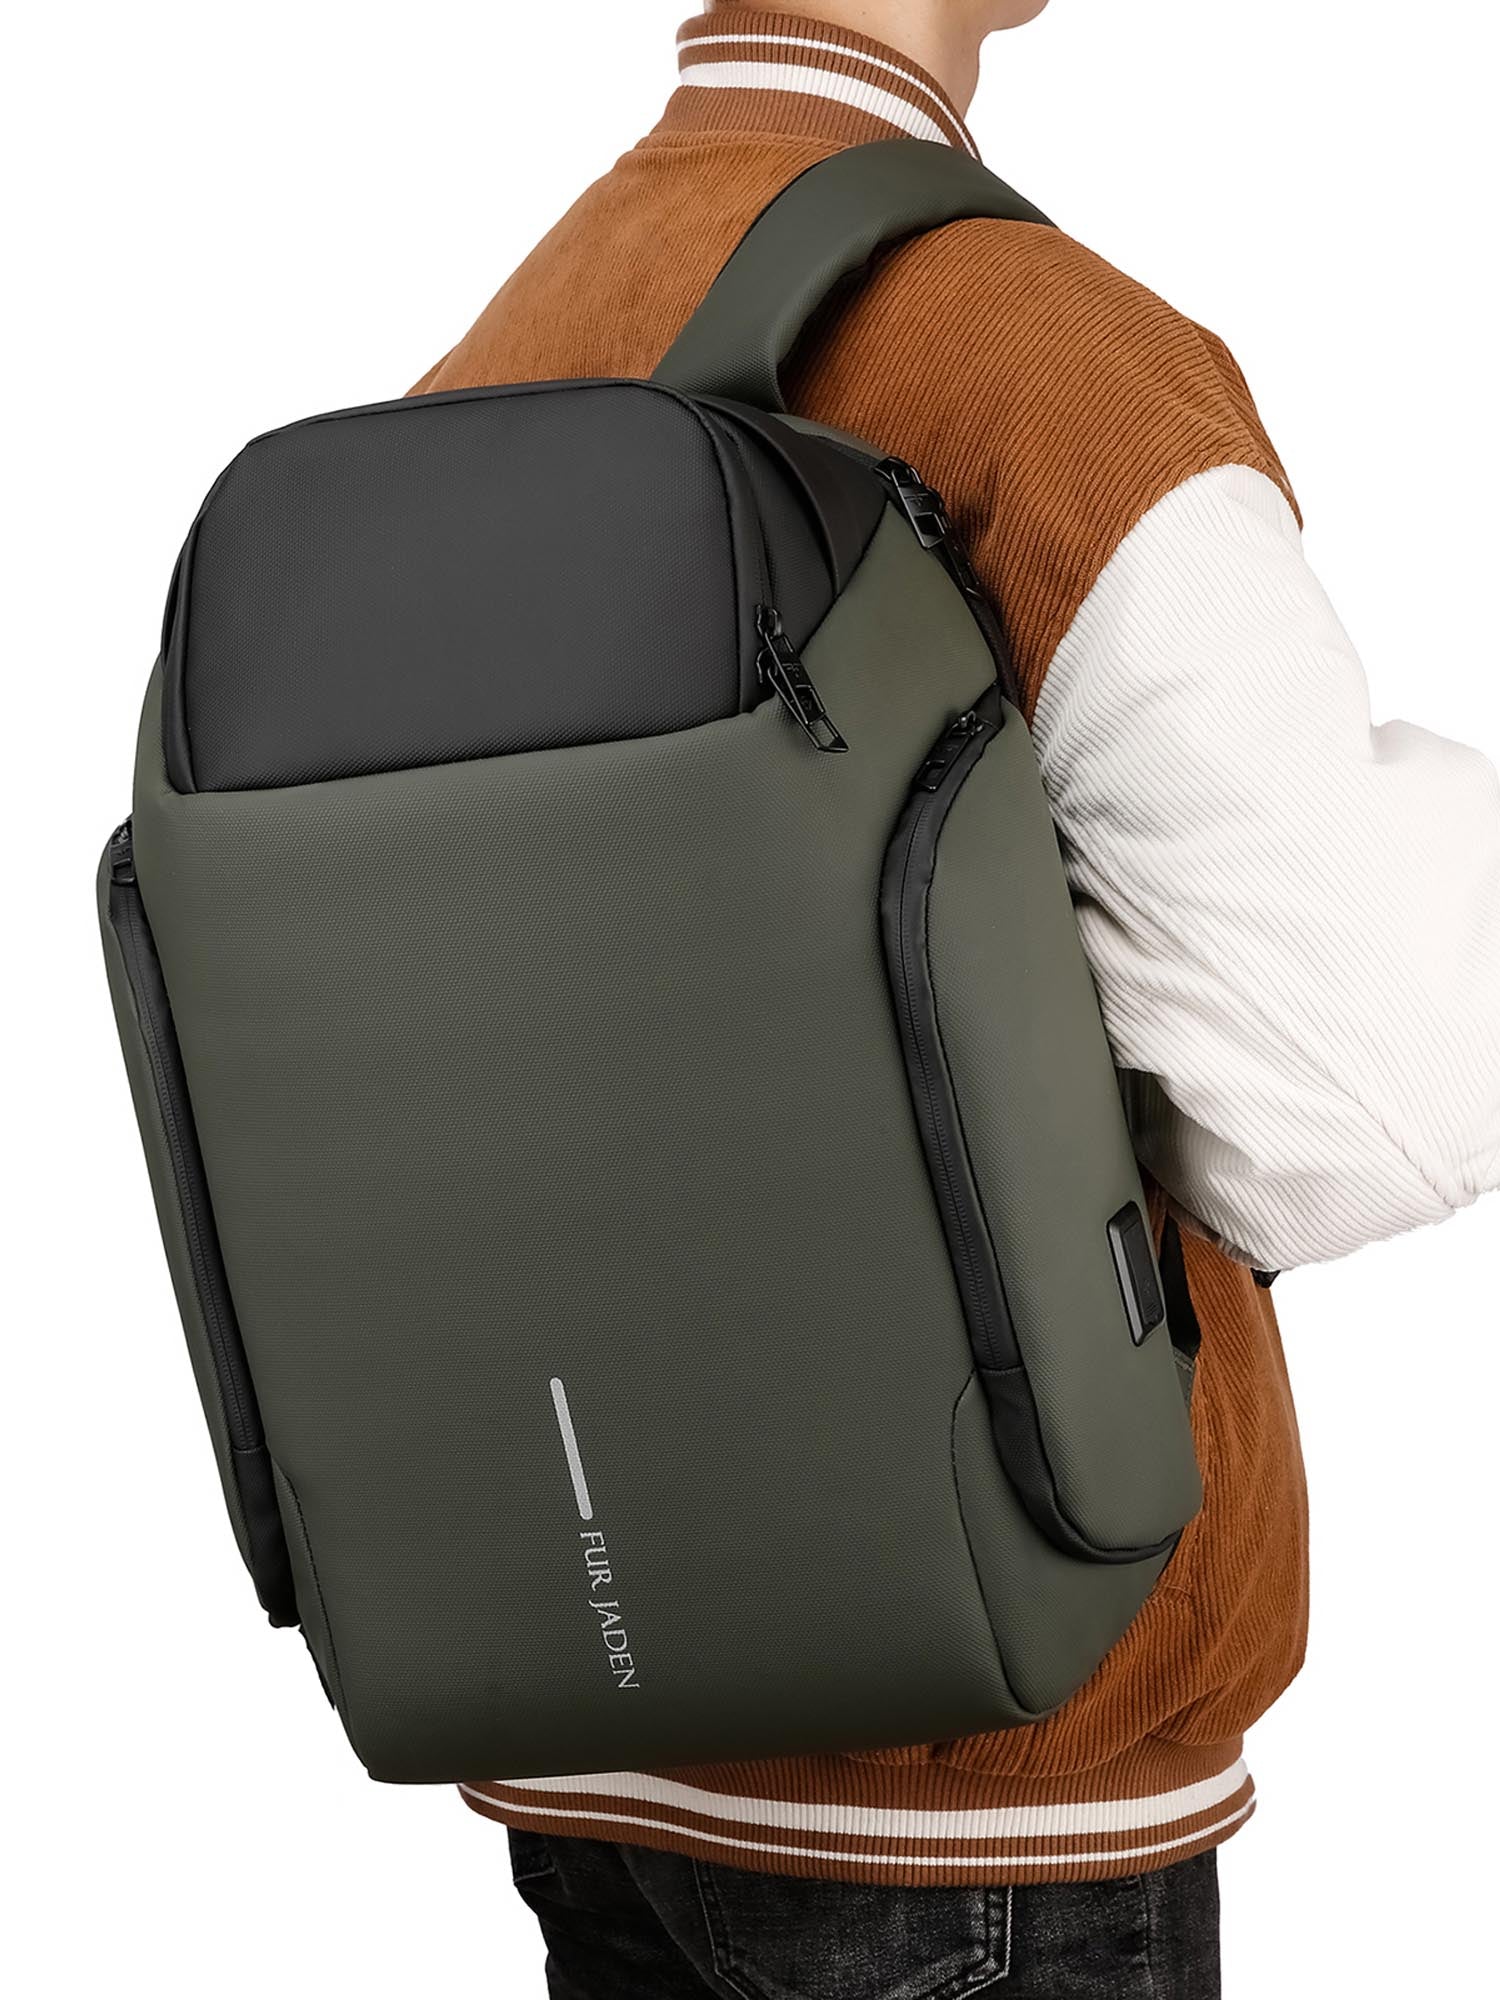 Fur Jaden Laptop Backpack with USB Port  AntiTheft Back Pocket  Grey  Fur  Jaden Lifestyle Pvt Ltd